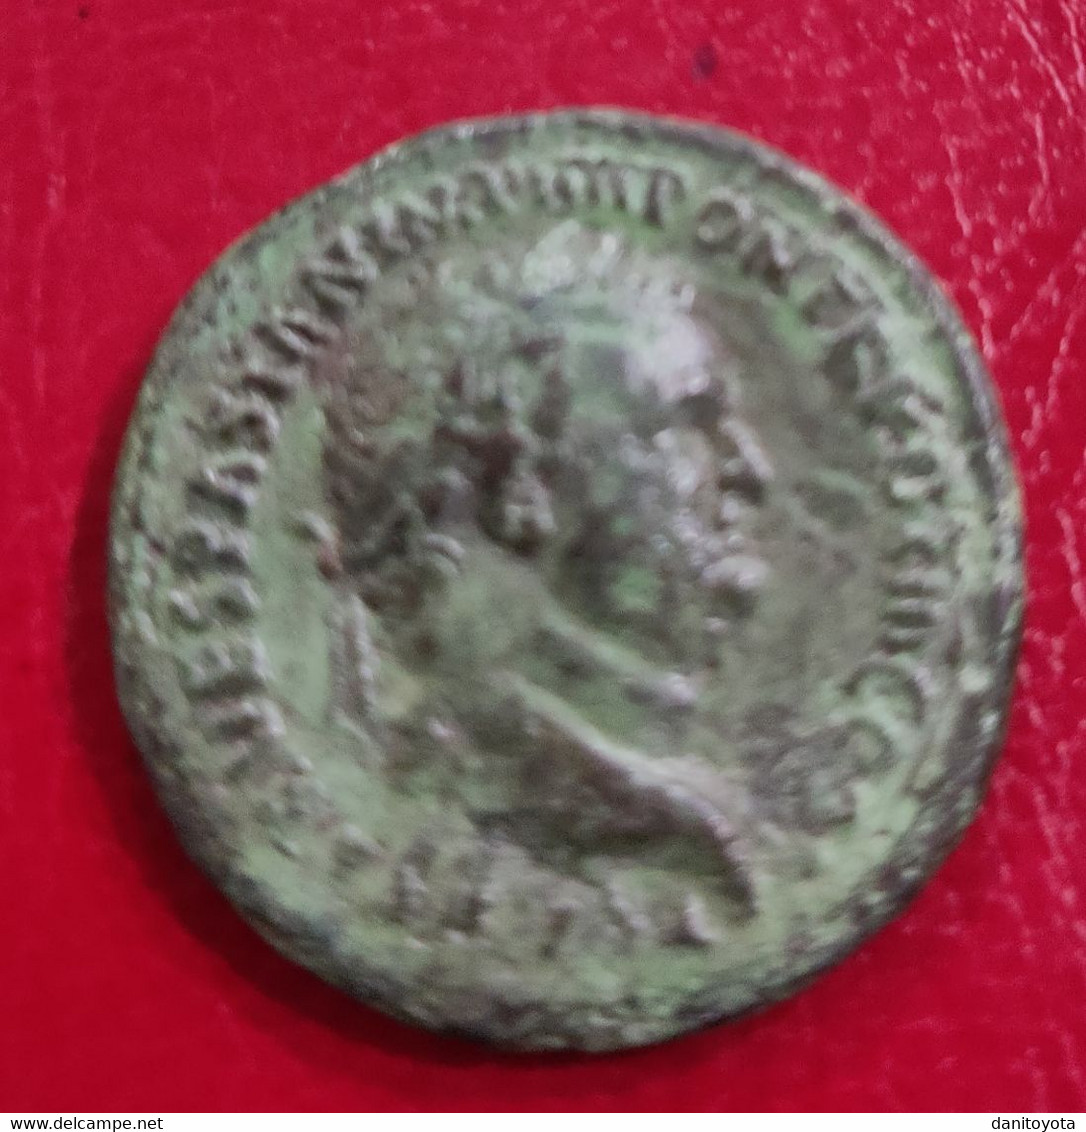 IMPERIO ROMANO. AÑO 72 D.C. DUPONDIO. TITO. PESO 10.7 GR.  REF A/F. - Les Flaviens (69 à 96)